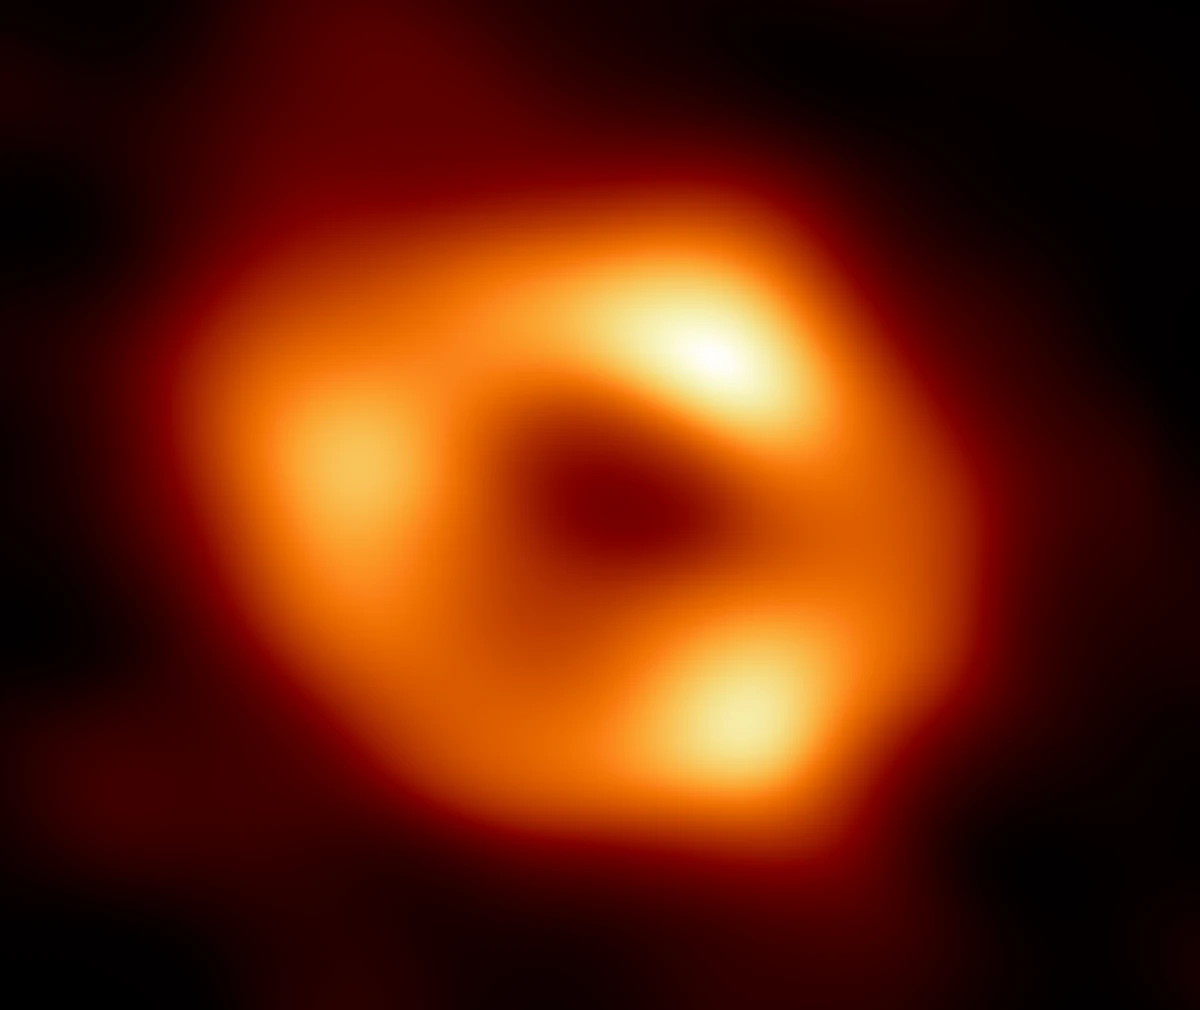 L'immagine di Sagittarius A*